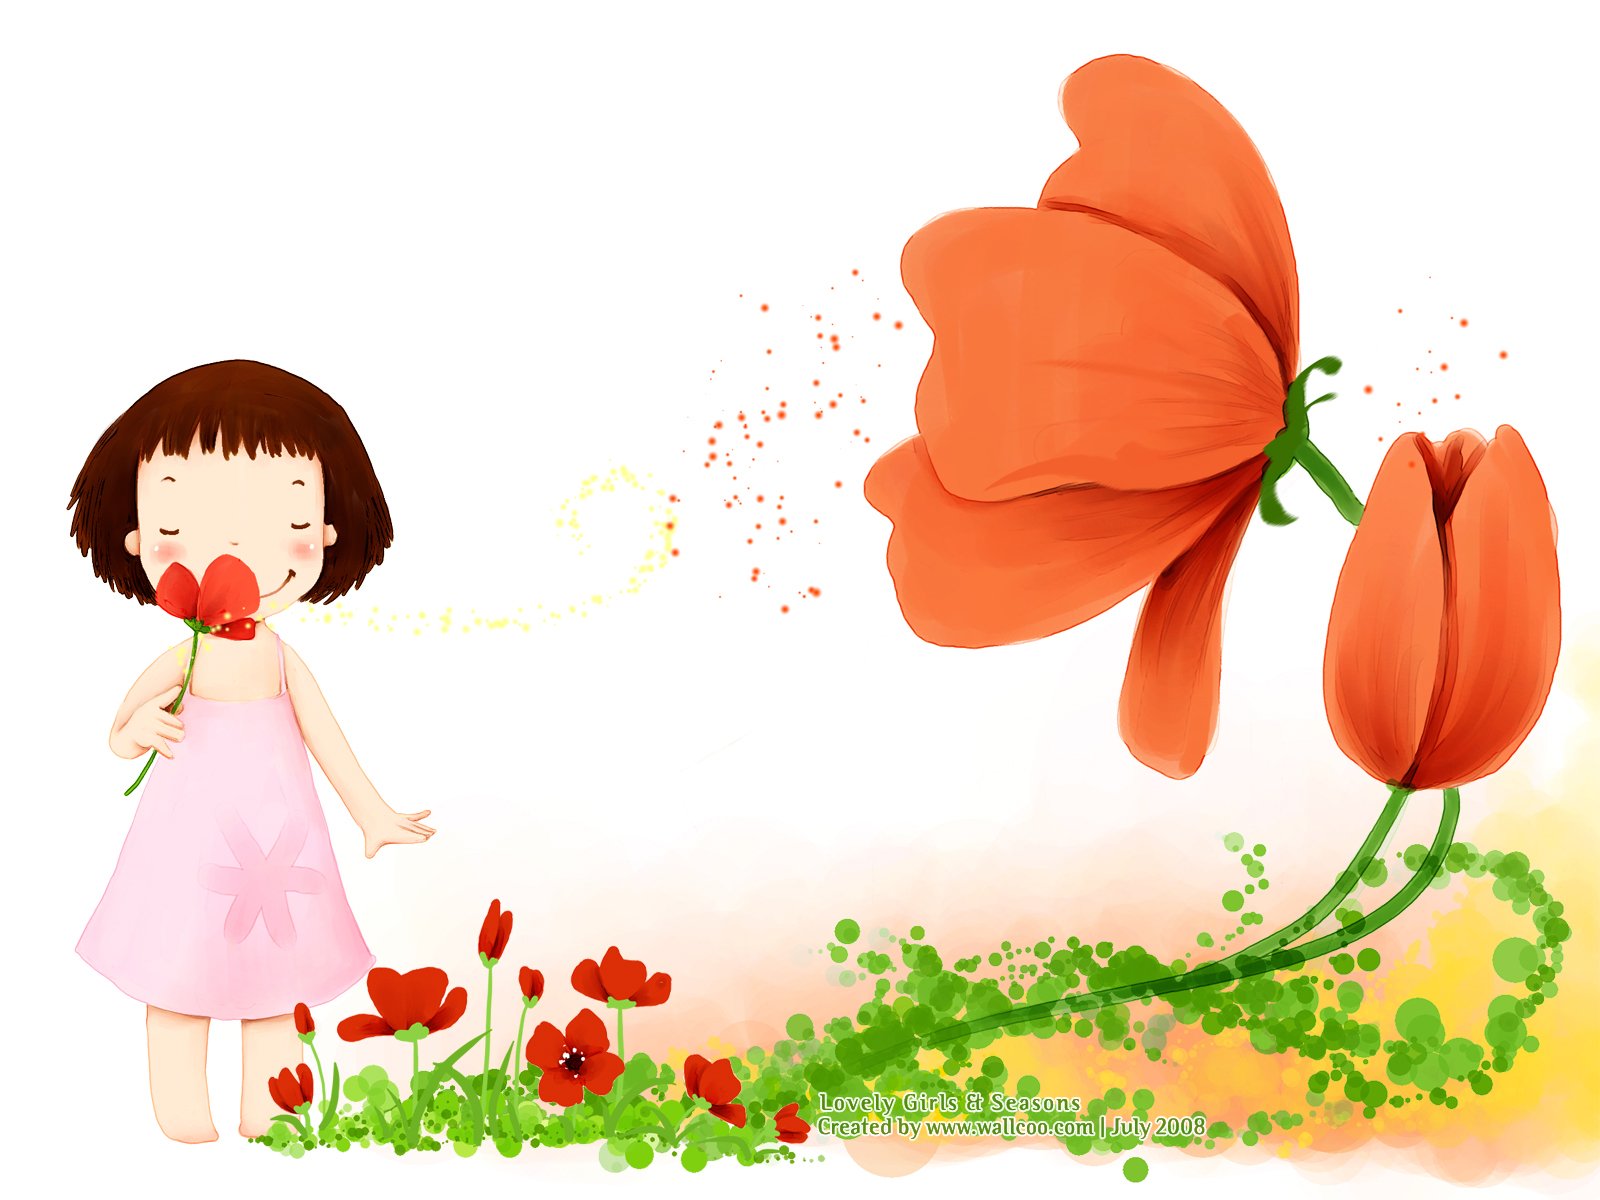 壁纸1600×1200韩国可爱小女孩插画壁纸,韩国儿童插画-可爱小女孩壁纸图片-插画壁纸-插画图片素材-桌面壁纸